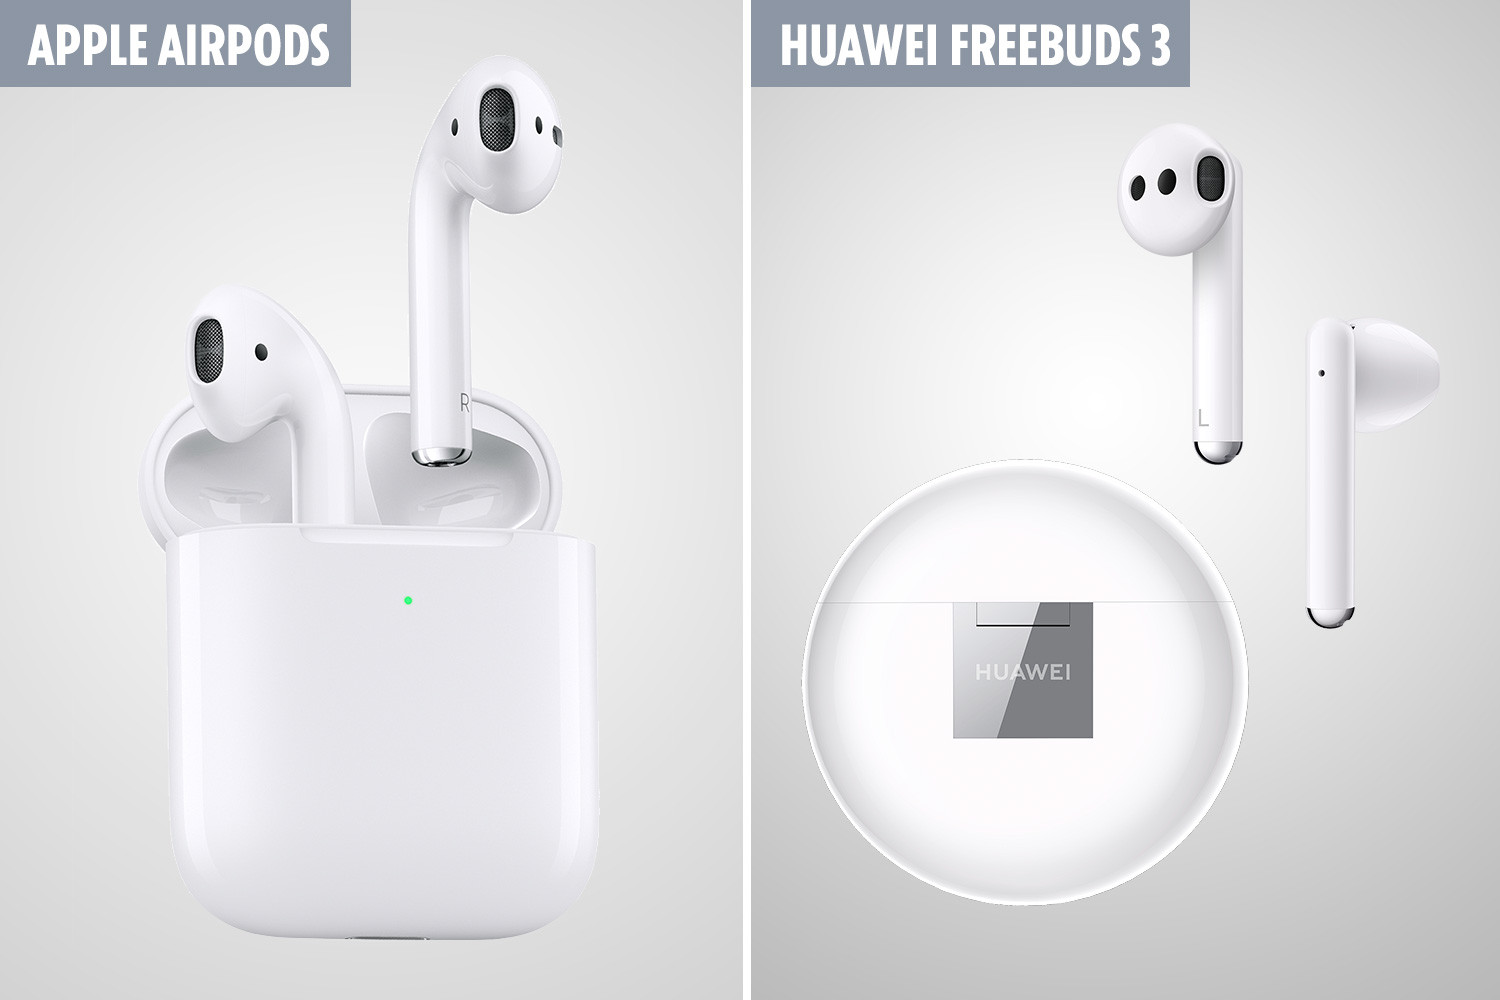  Apple penggemar berpikir Huawei FreeBuds 3 yang baru adalah AirPods 